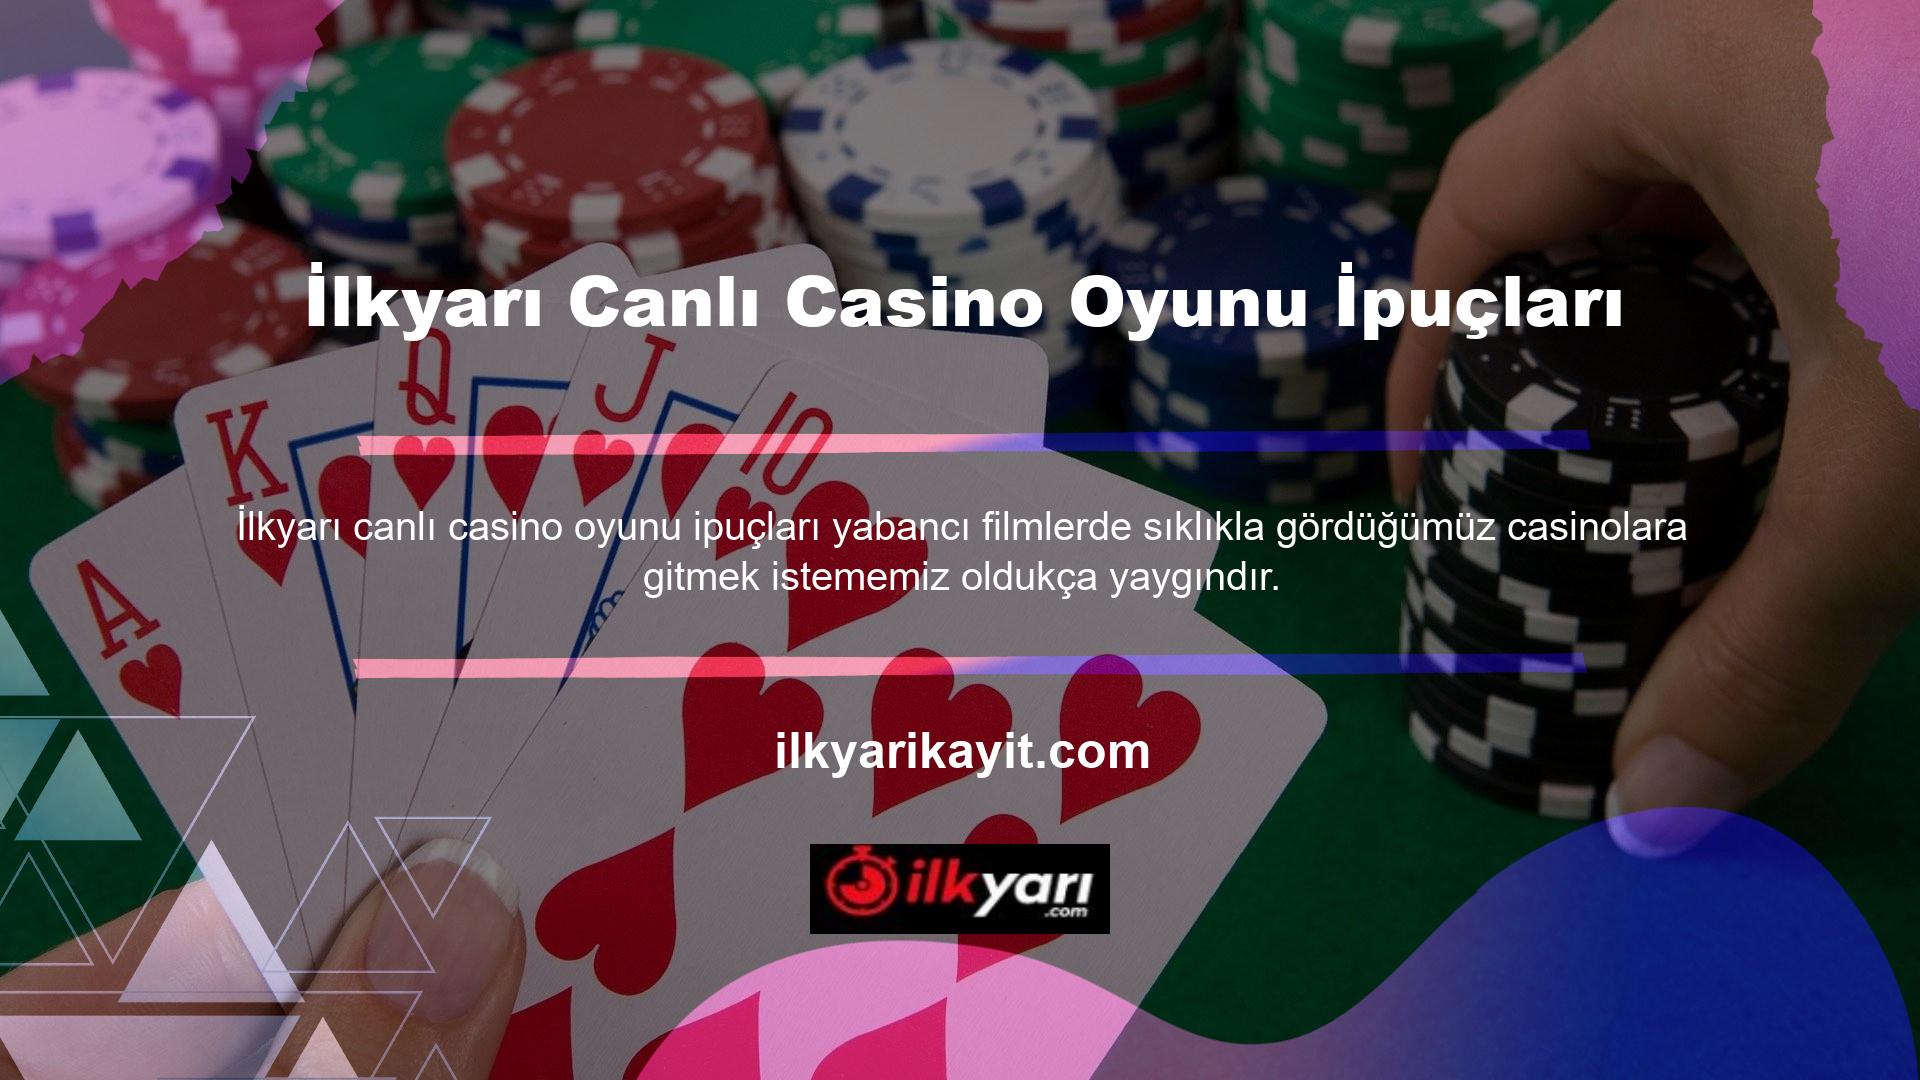 Poker, rulet, Black Jack ve bakara gibi canlı casino oyunları bu sayede oynanabilmektedir